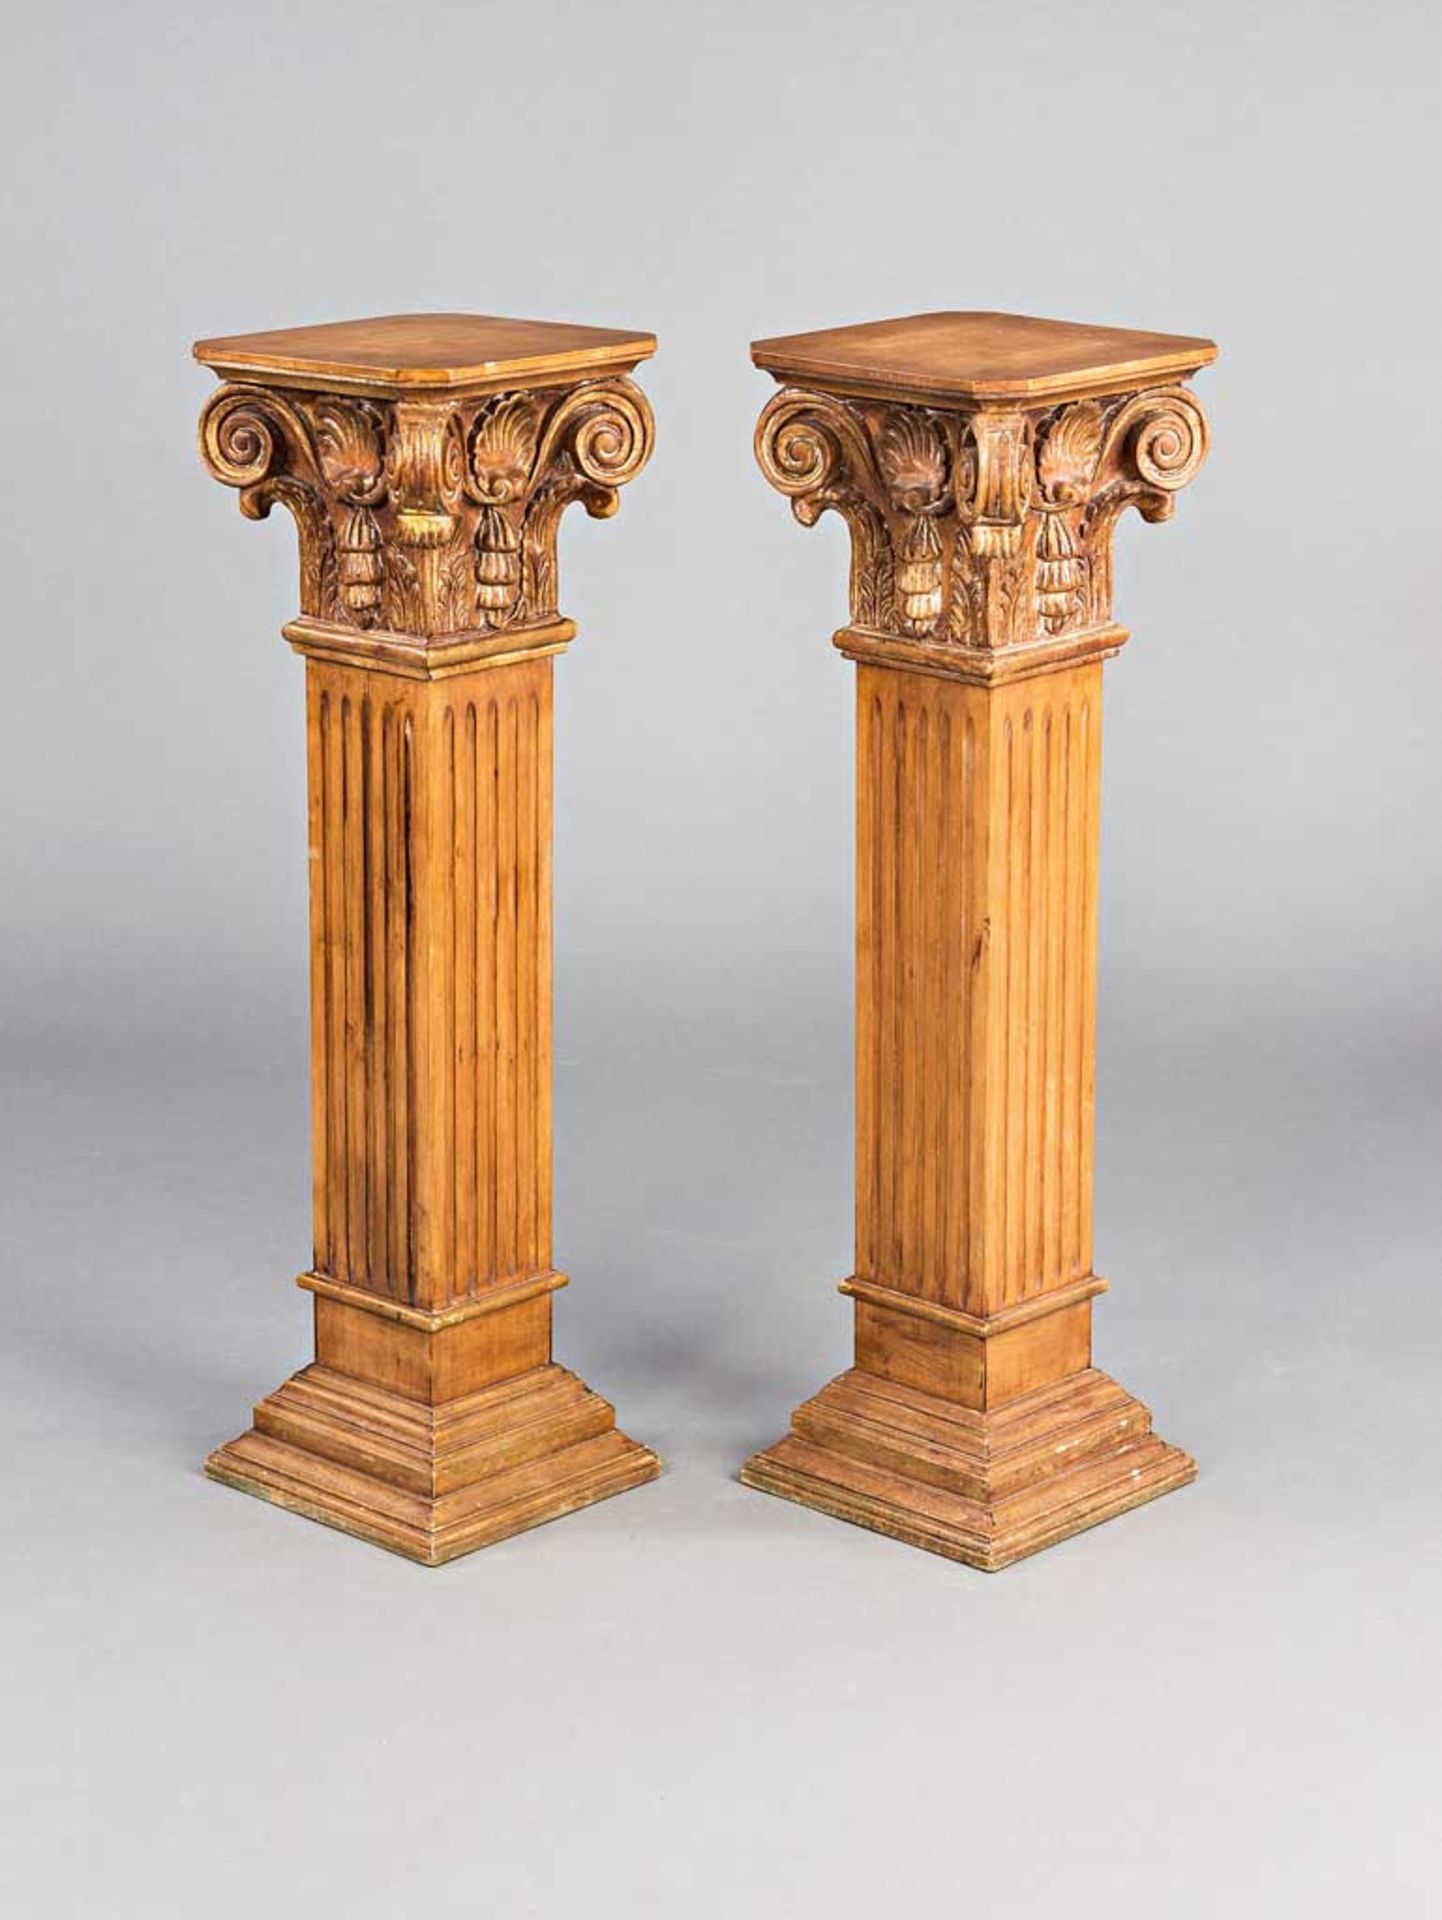 Paar Podeste in Form korinthischer Säulen. Holz, teils gefasst. H 100 cm